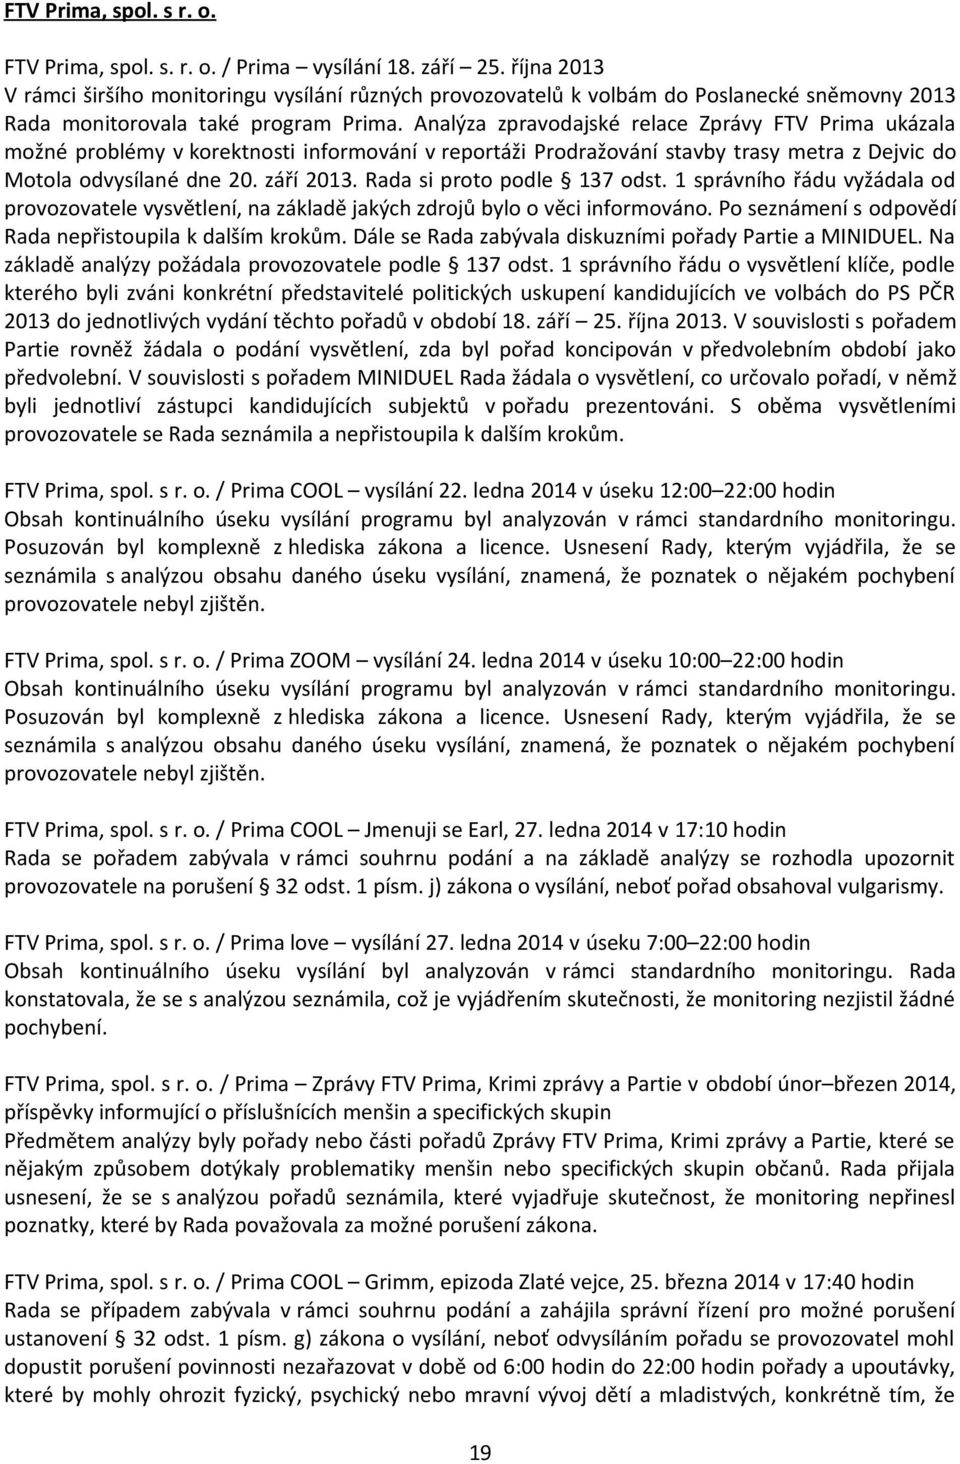 Analýza zpravodajské relace Zprávy FTV Prima ukázala možné problémy v korektnosti informování v reportáži Prodražování stavby trasy metra z Dejvic do Motola odvysílané dne 20. září 2013.